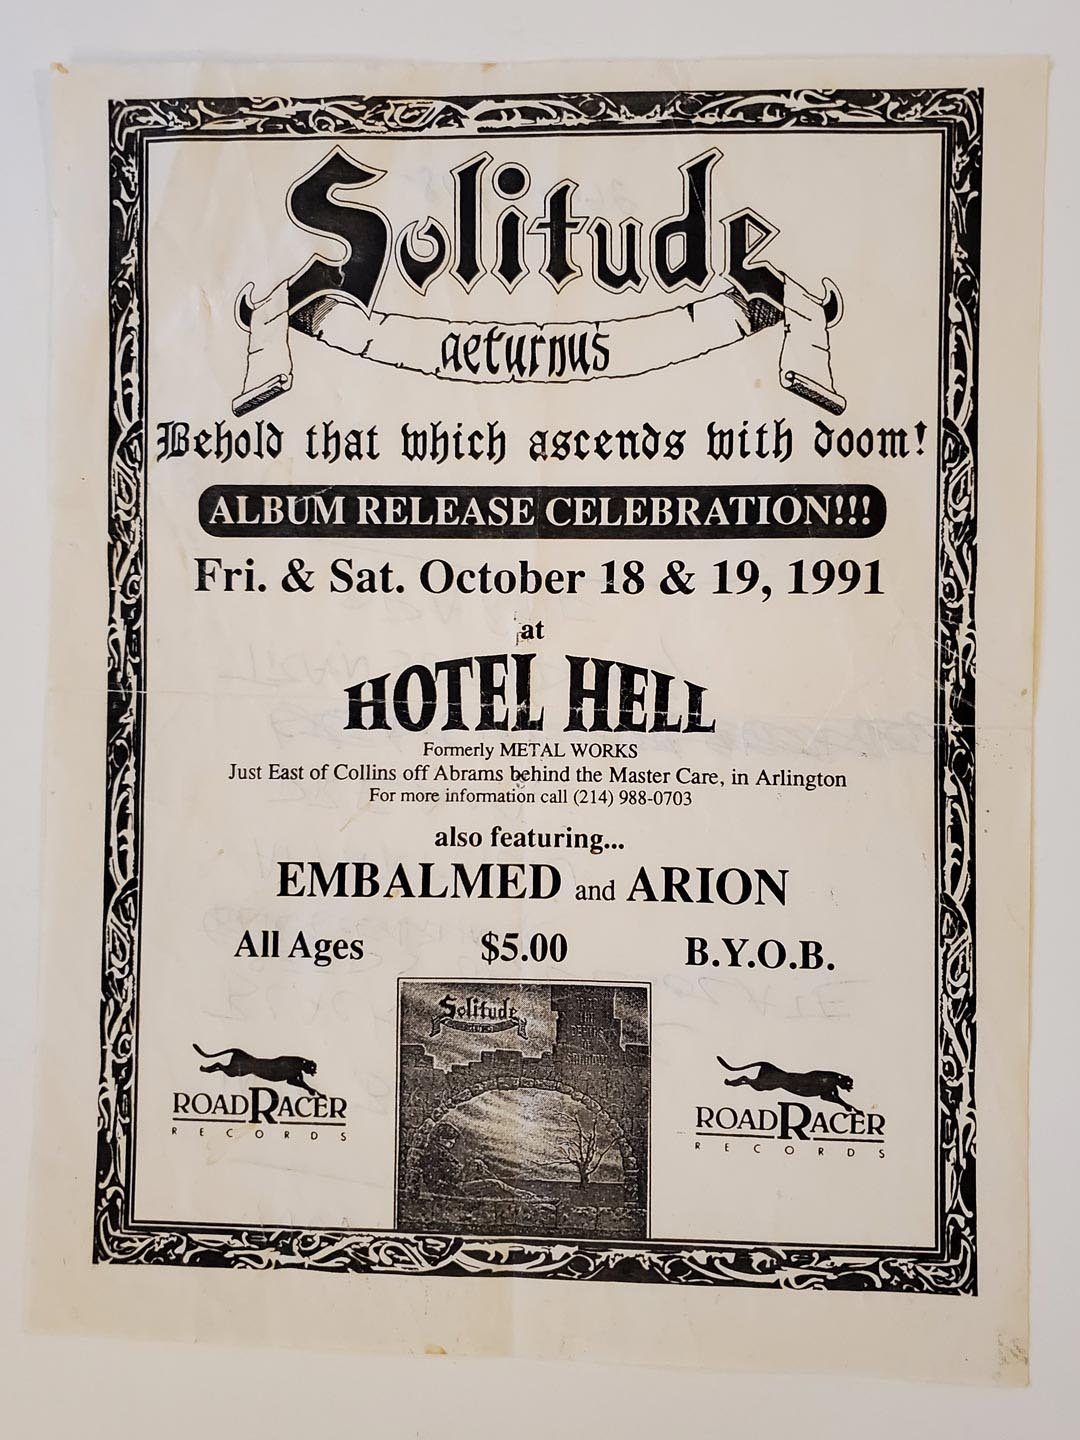 Solitude Aeturnus Flyer, Album Release (1991-10-18 & 19)